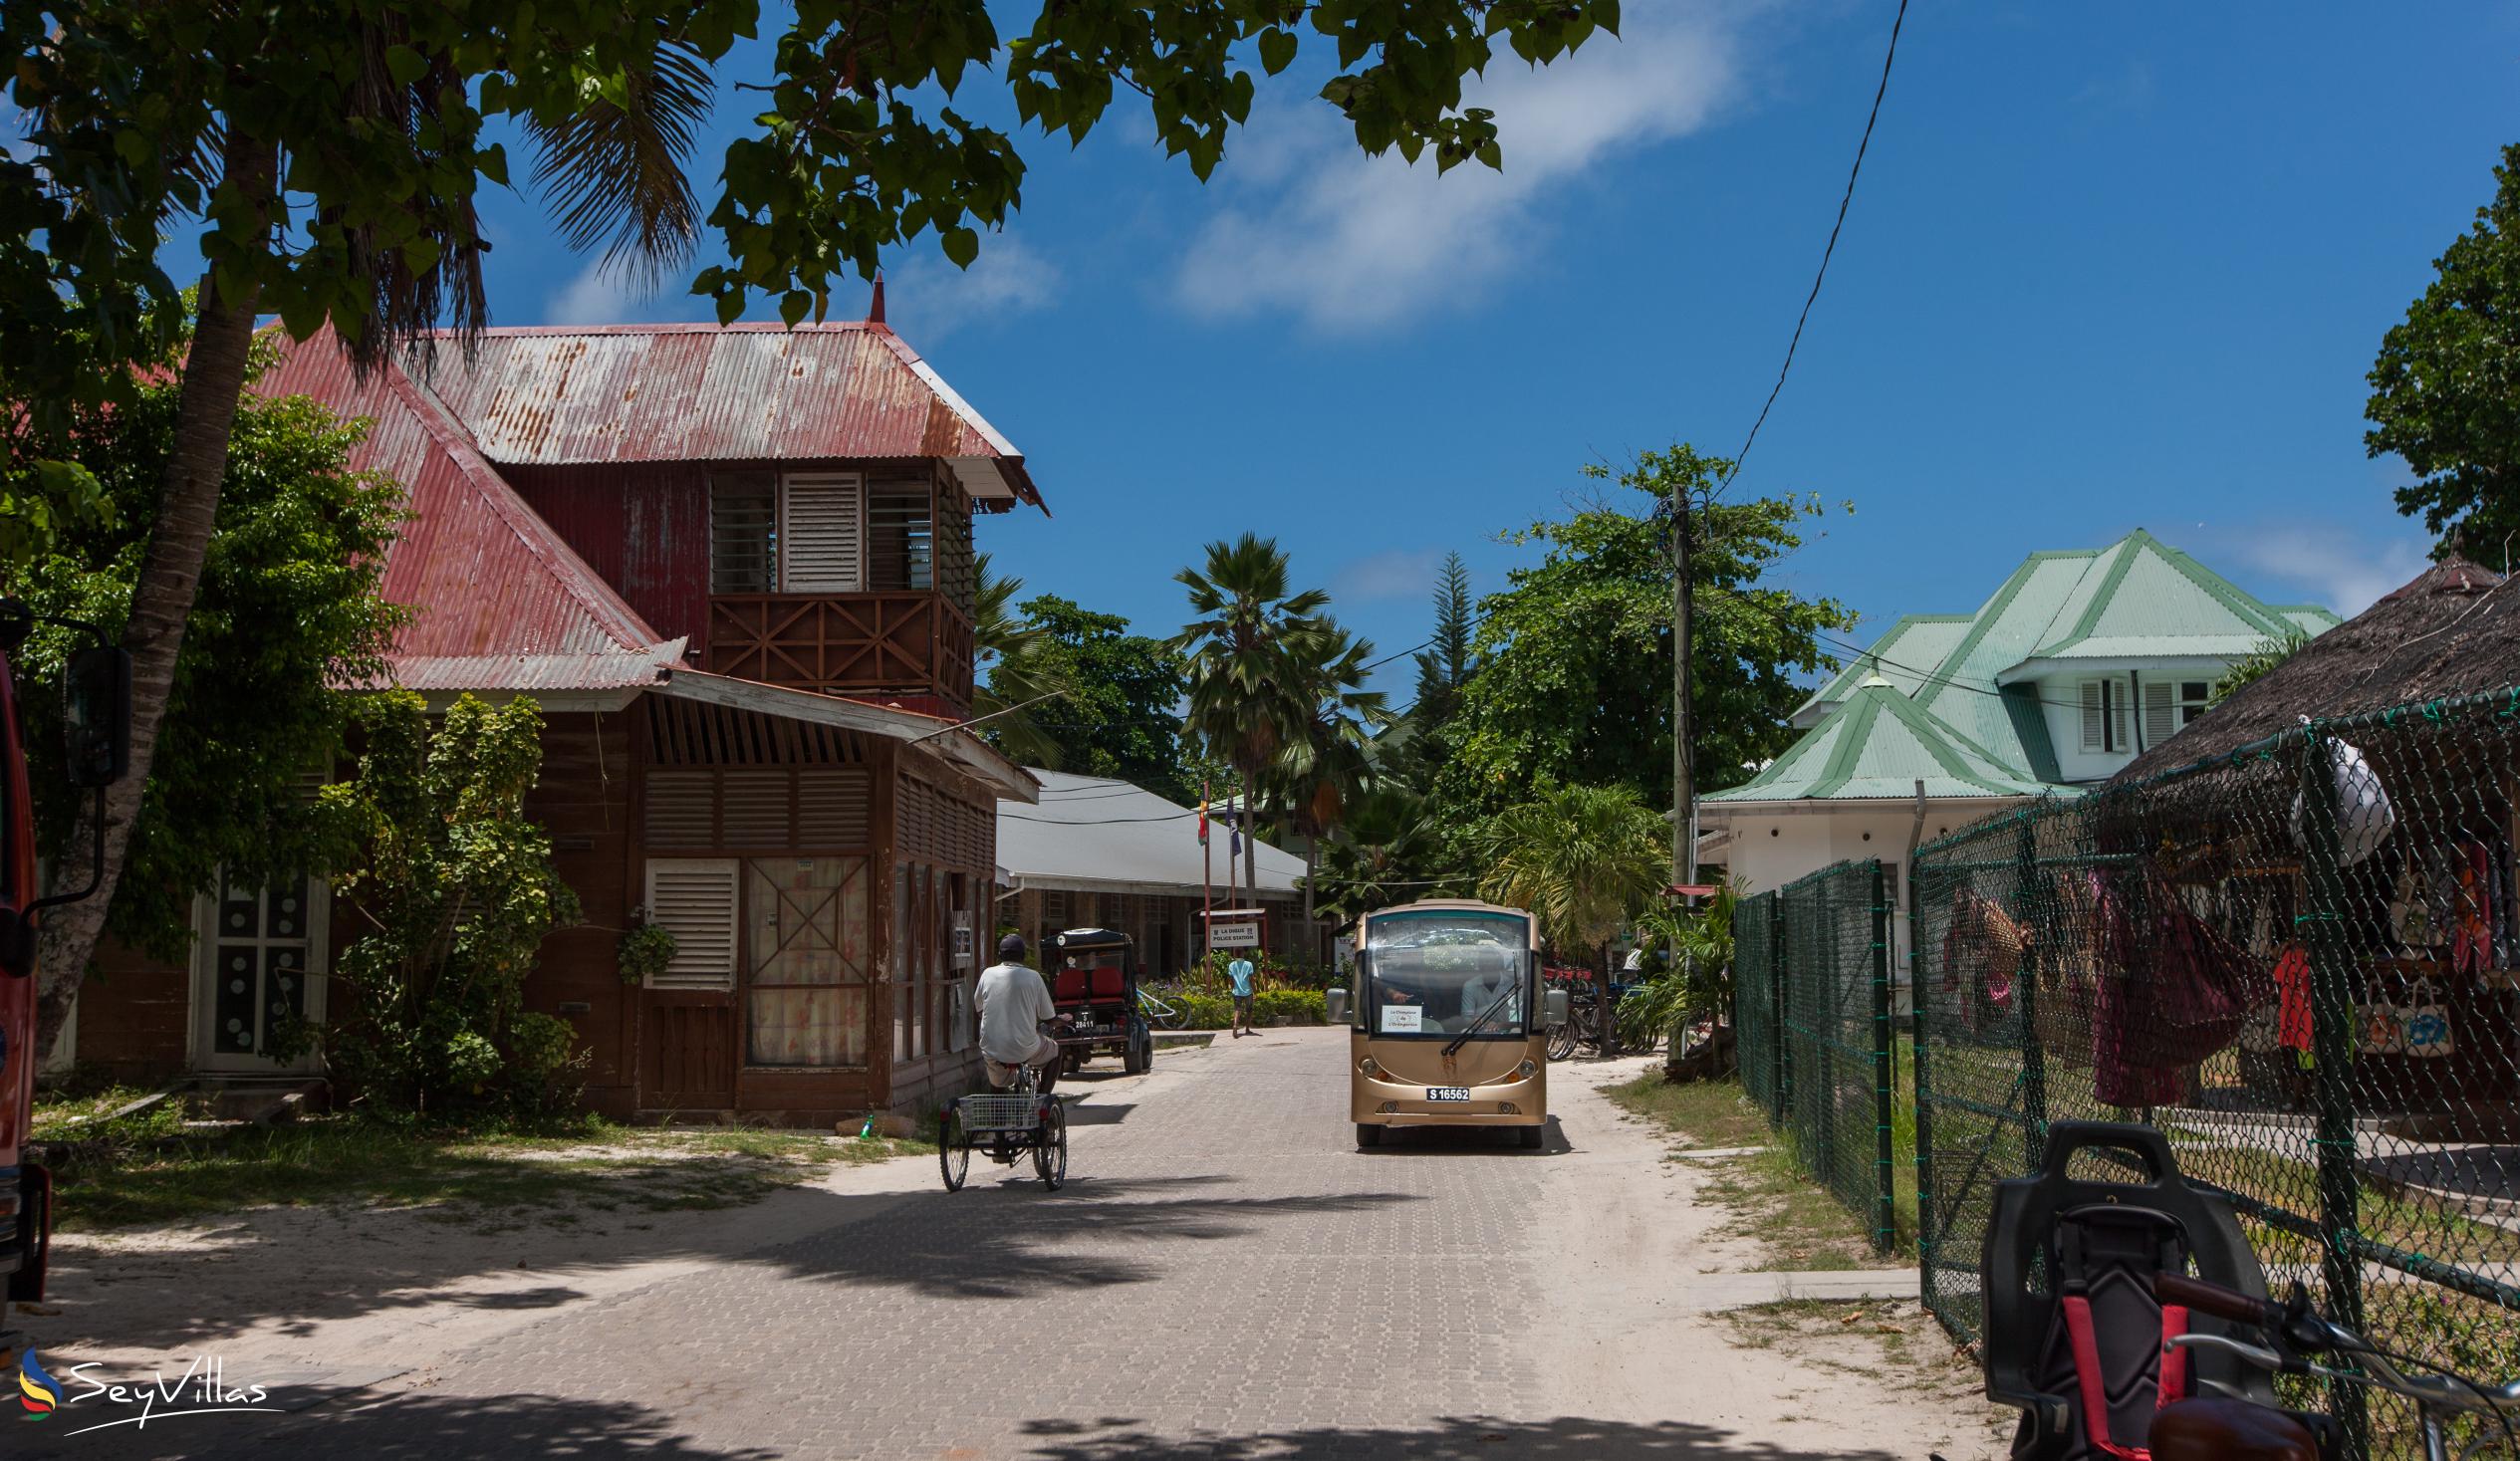 Photo 74: Villa Charme De L'ile - Location - La Digue (Seychelles)